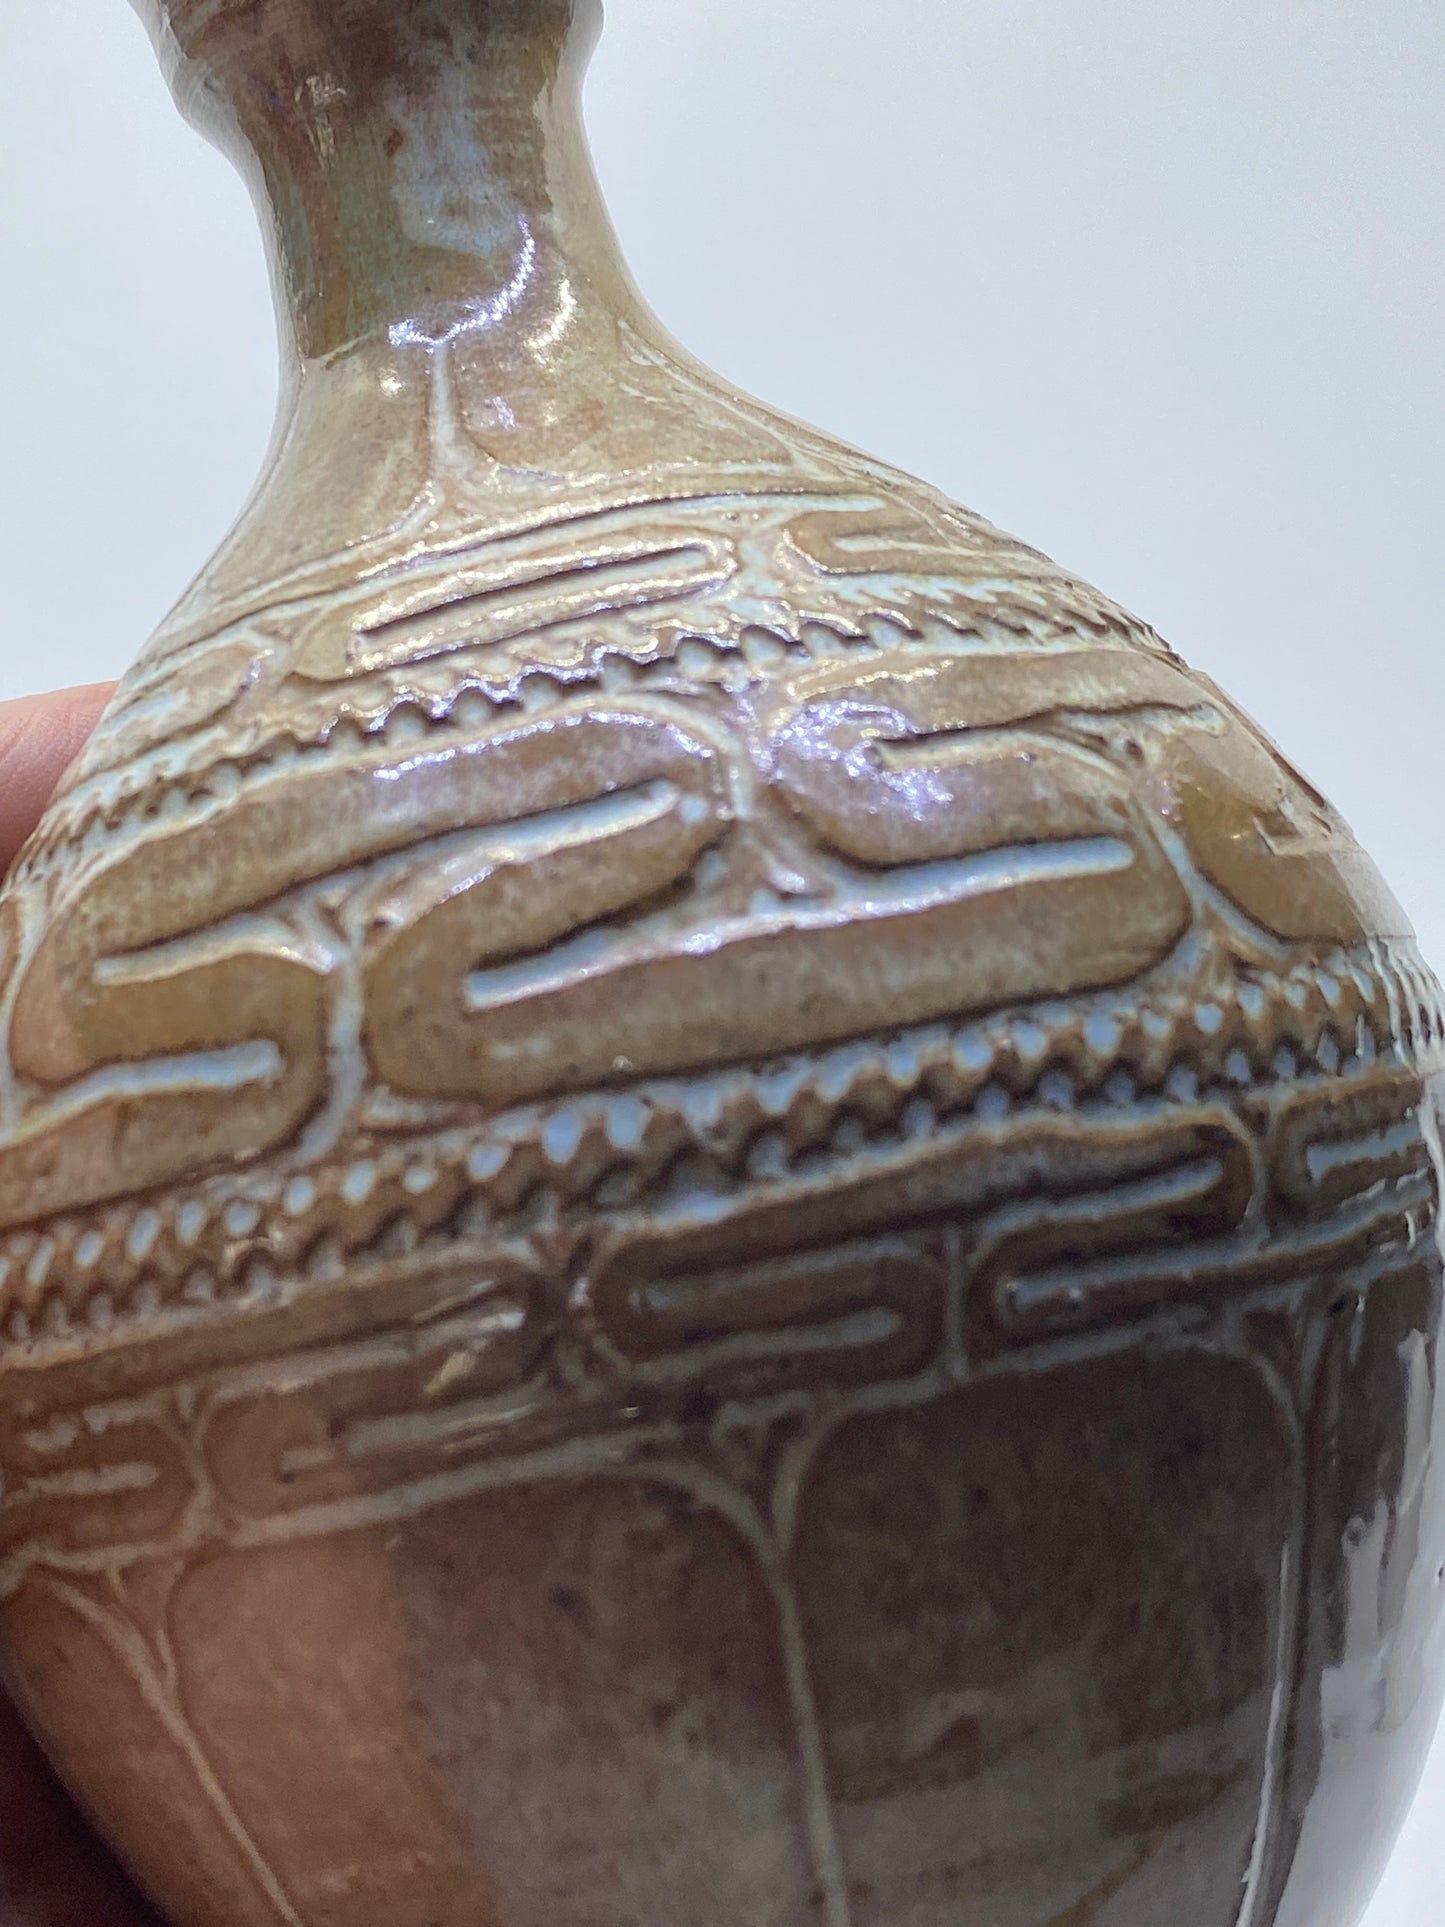 Vintage PNG (Papua New Guinea) vase